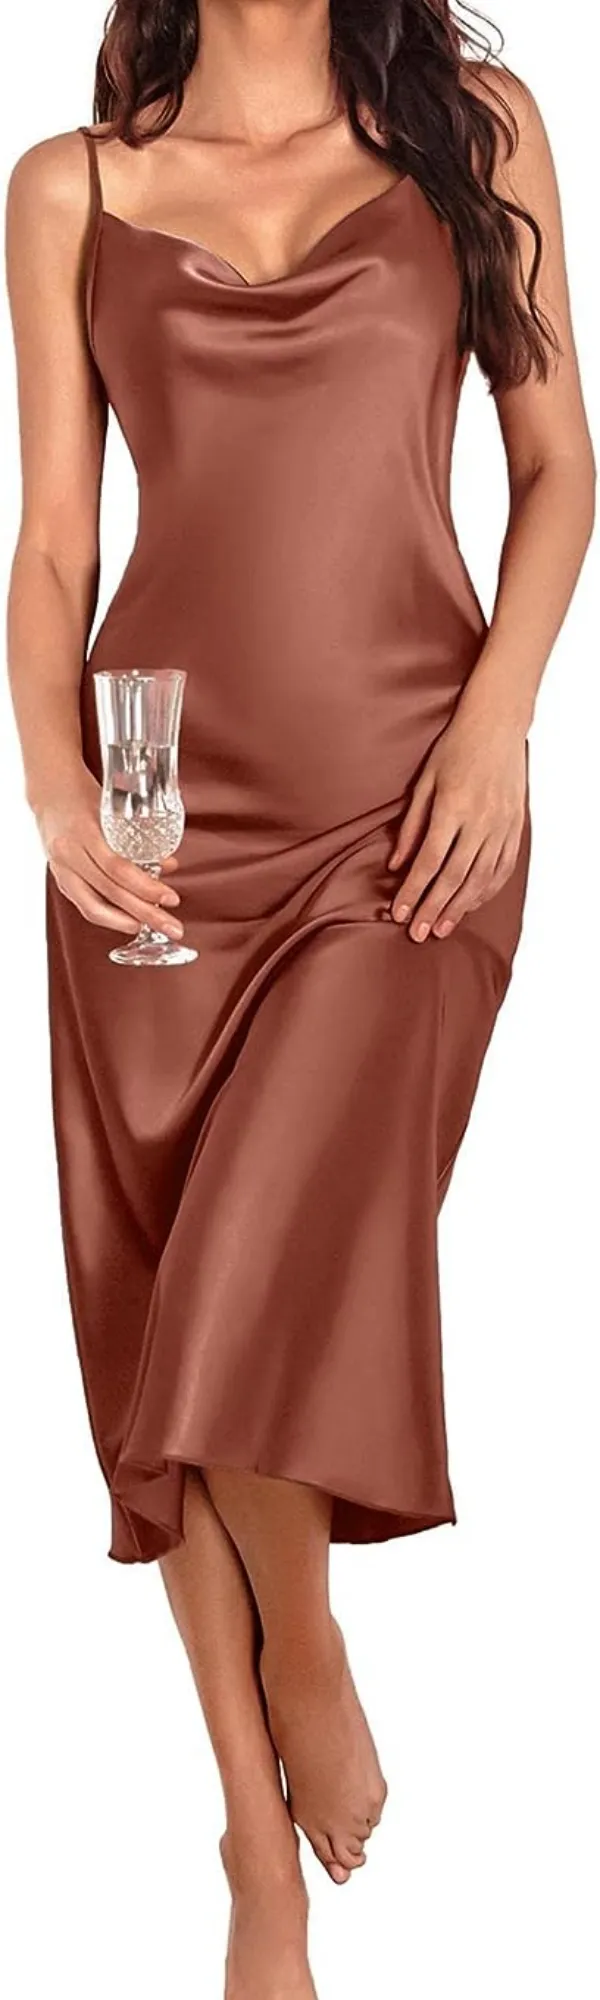 여자 새틴 나이트 가운 패션 란제리 잉글리시 스파게티 스트랩 끈 우아한 긴 슬립 새틴 실크 미디 드레스